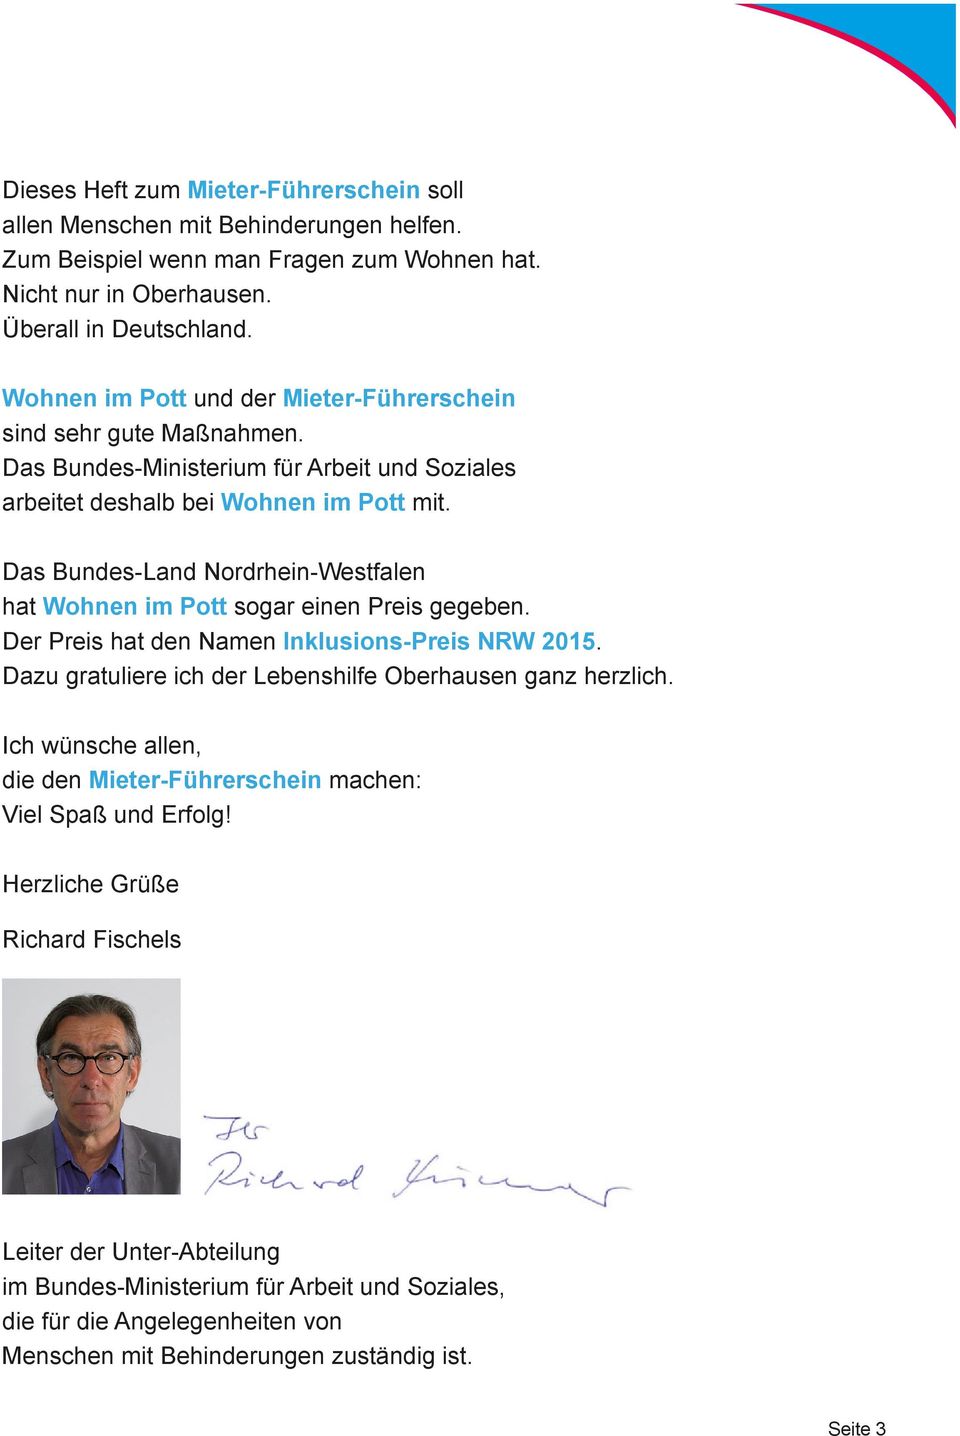 Das Bundes-Land Nordrhein-Westfalen hat Wohnen im Pott sogar einen Preis gegeben. Der Preis hat den Namen Inklusions-Preis NRW 2015. Dazu gratuliere ich der Lebenshilfe Oberhausen ganz herzlich.